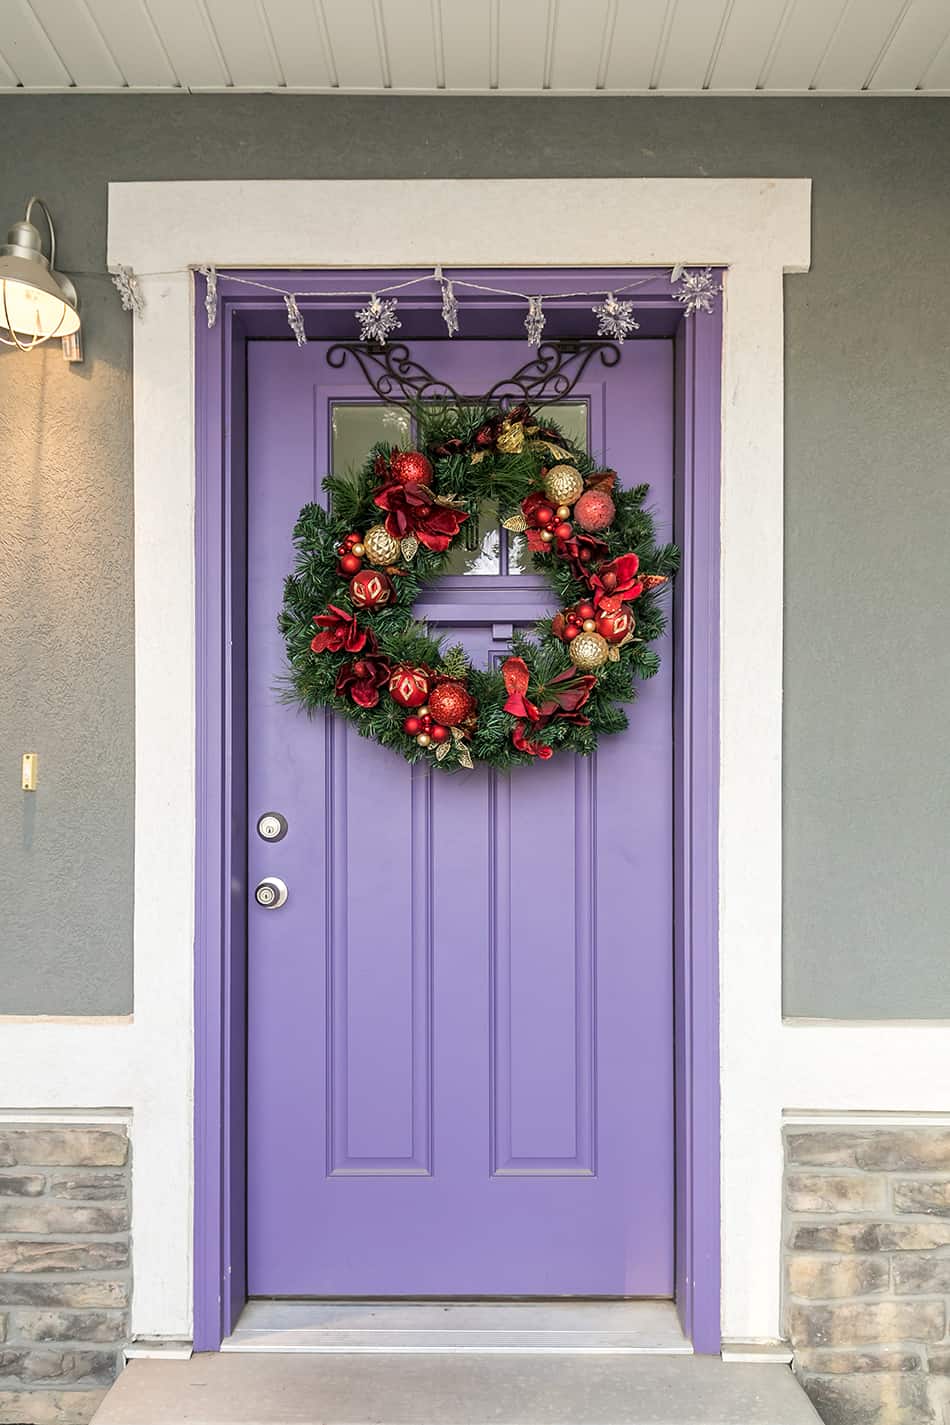 夢幻般的紫色前門和灰色房子